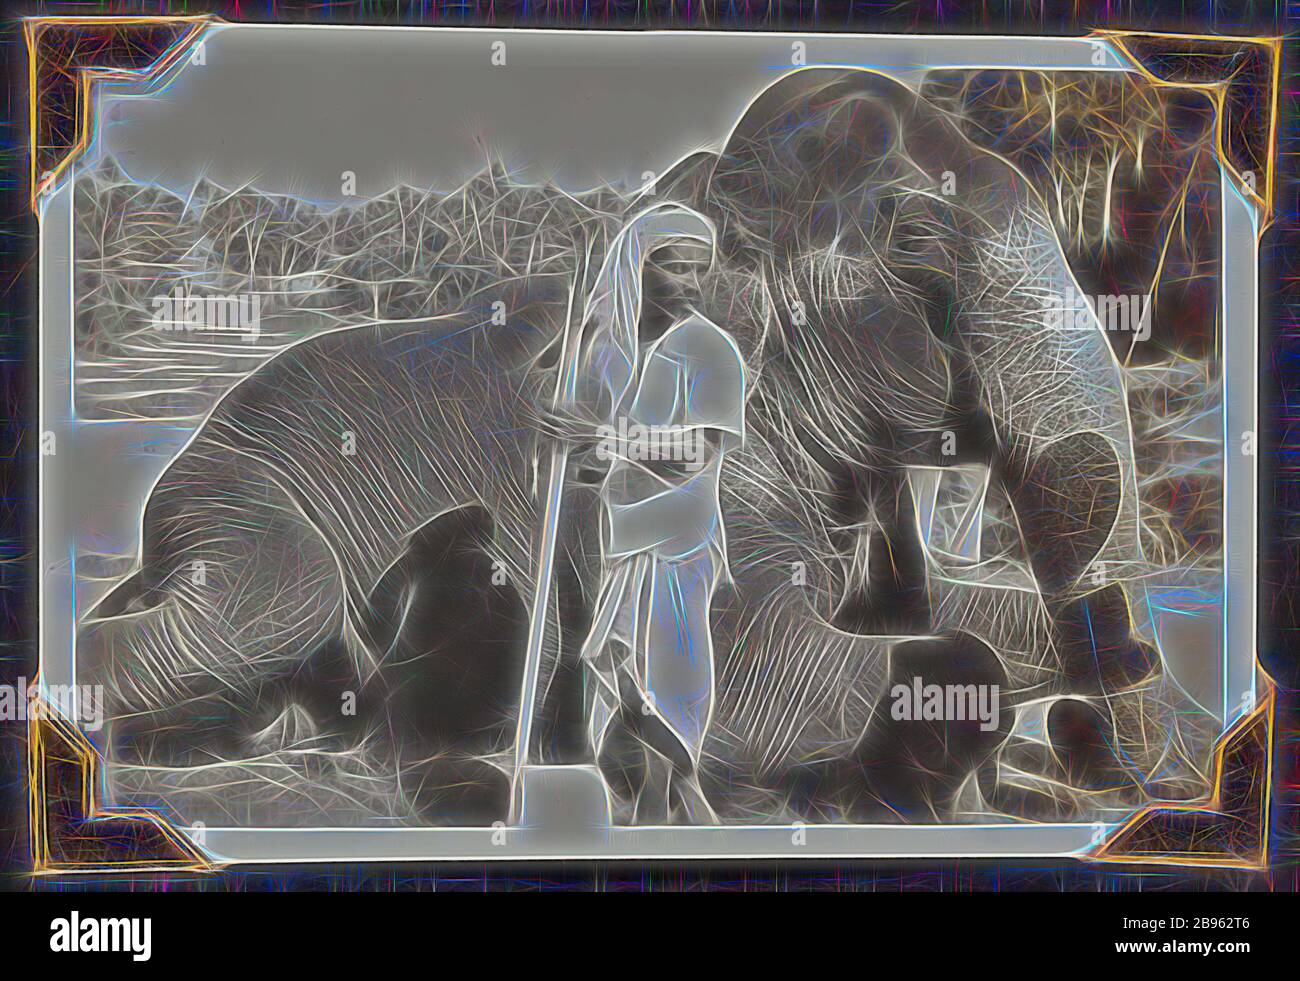 Elephant man avec plus grande famille palmer éléphant voyage migrants sri Lanka 14 mars 1947 Banque D'Images